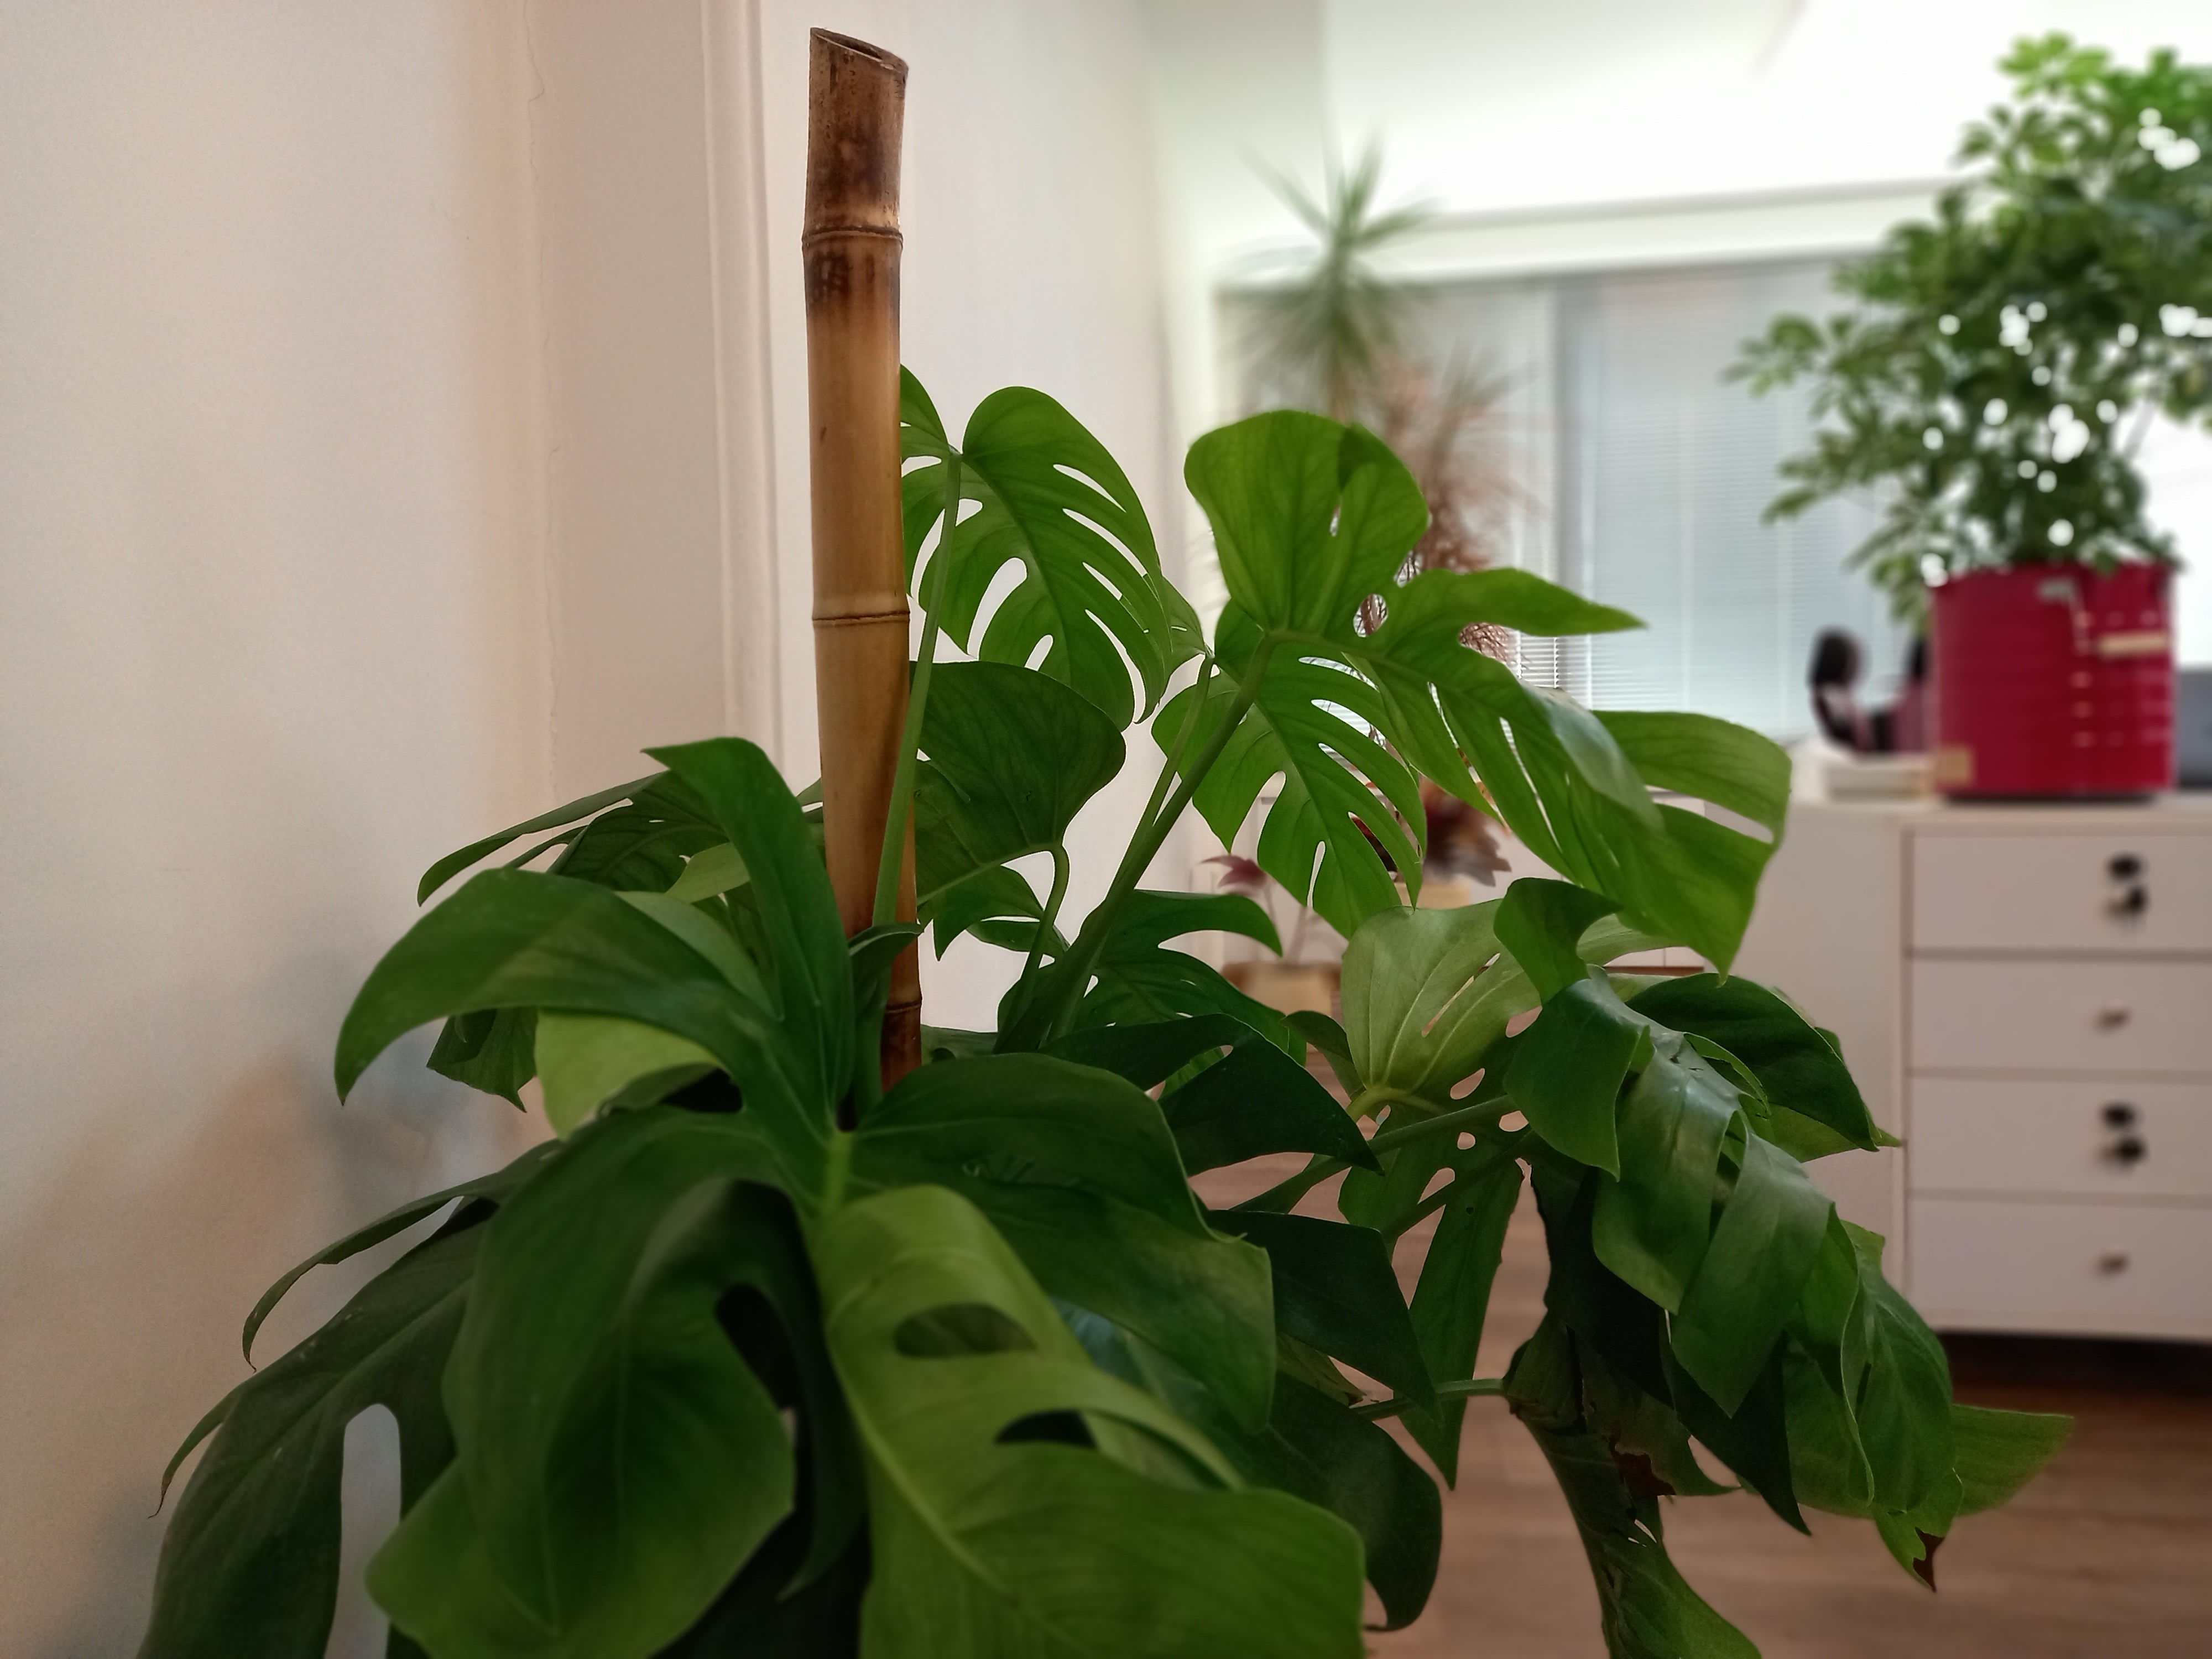 نمونه عکس پرتره گلکسی A12 سامسونگ - گیاه در دفتر زومیت